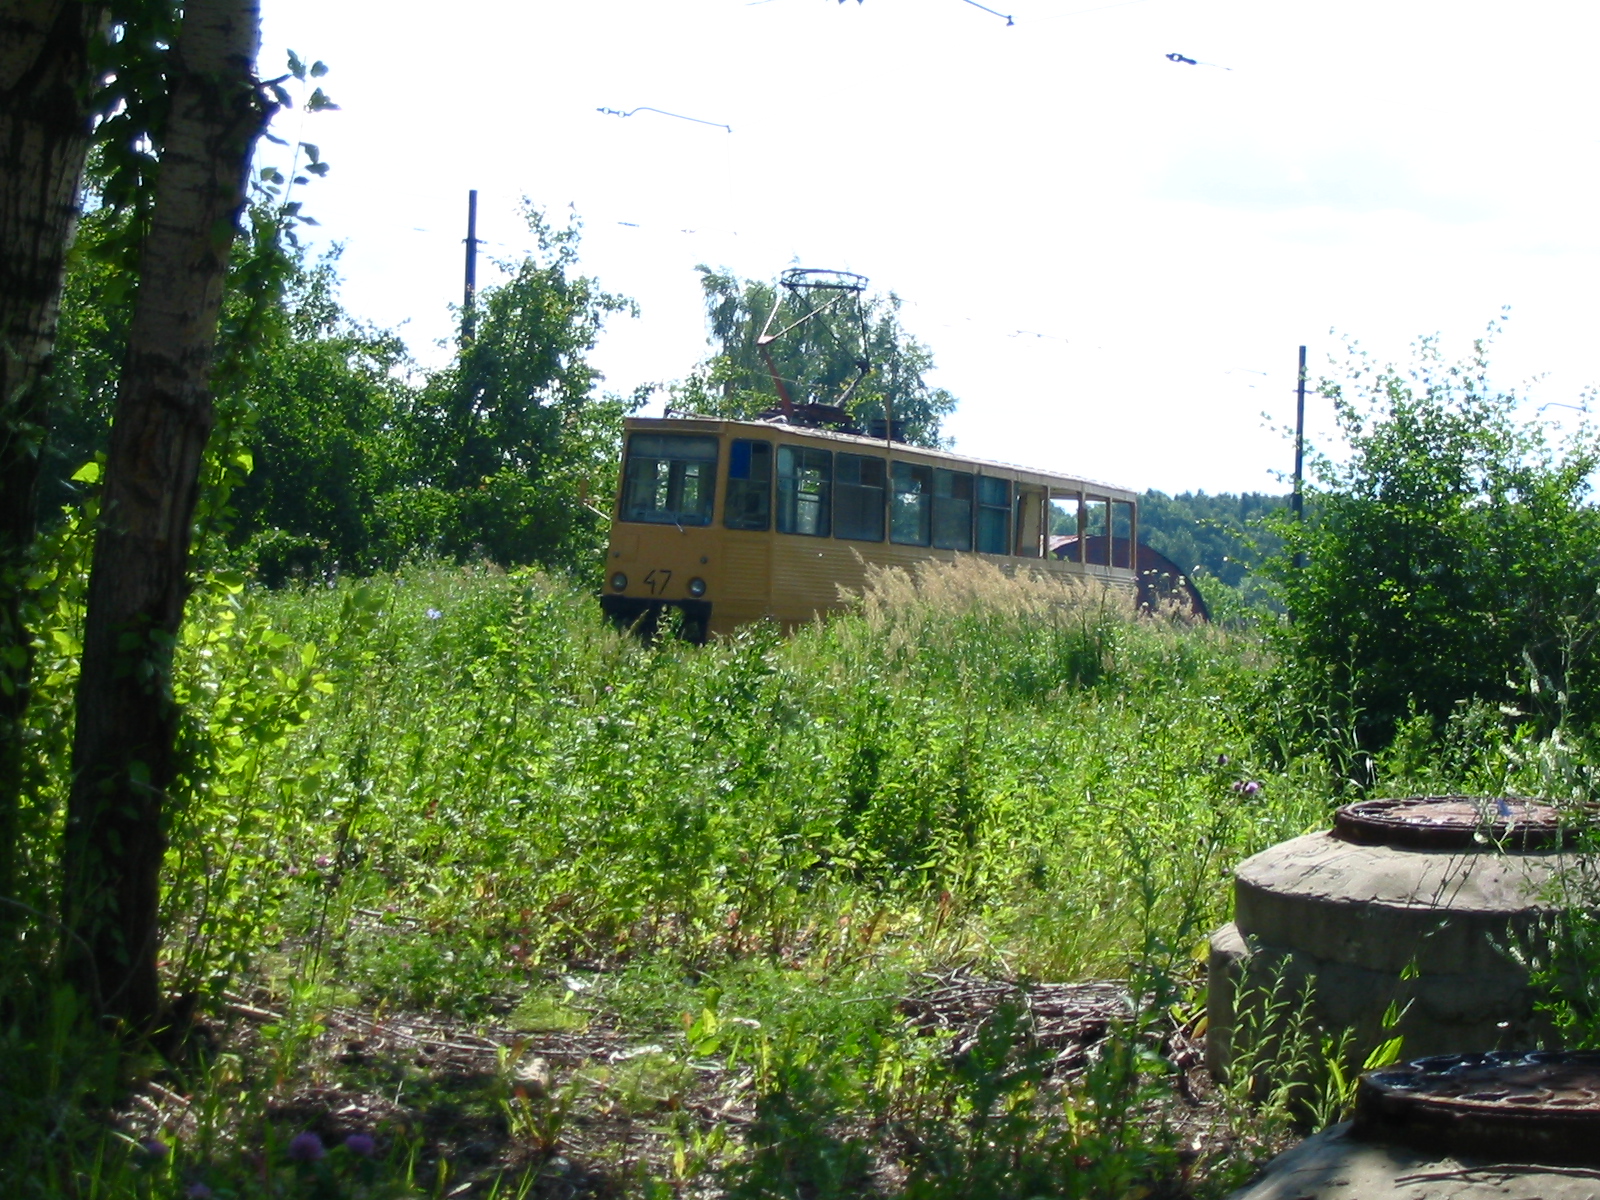 Служебный трамвай 71-605 47 с открытым кузовом